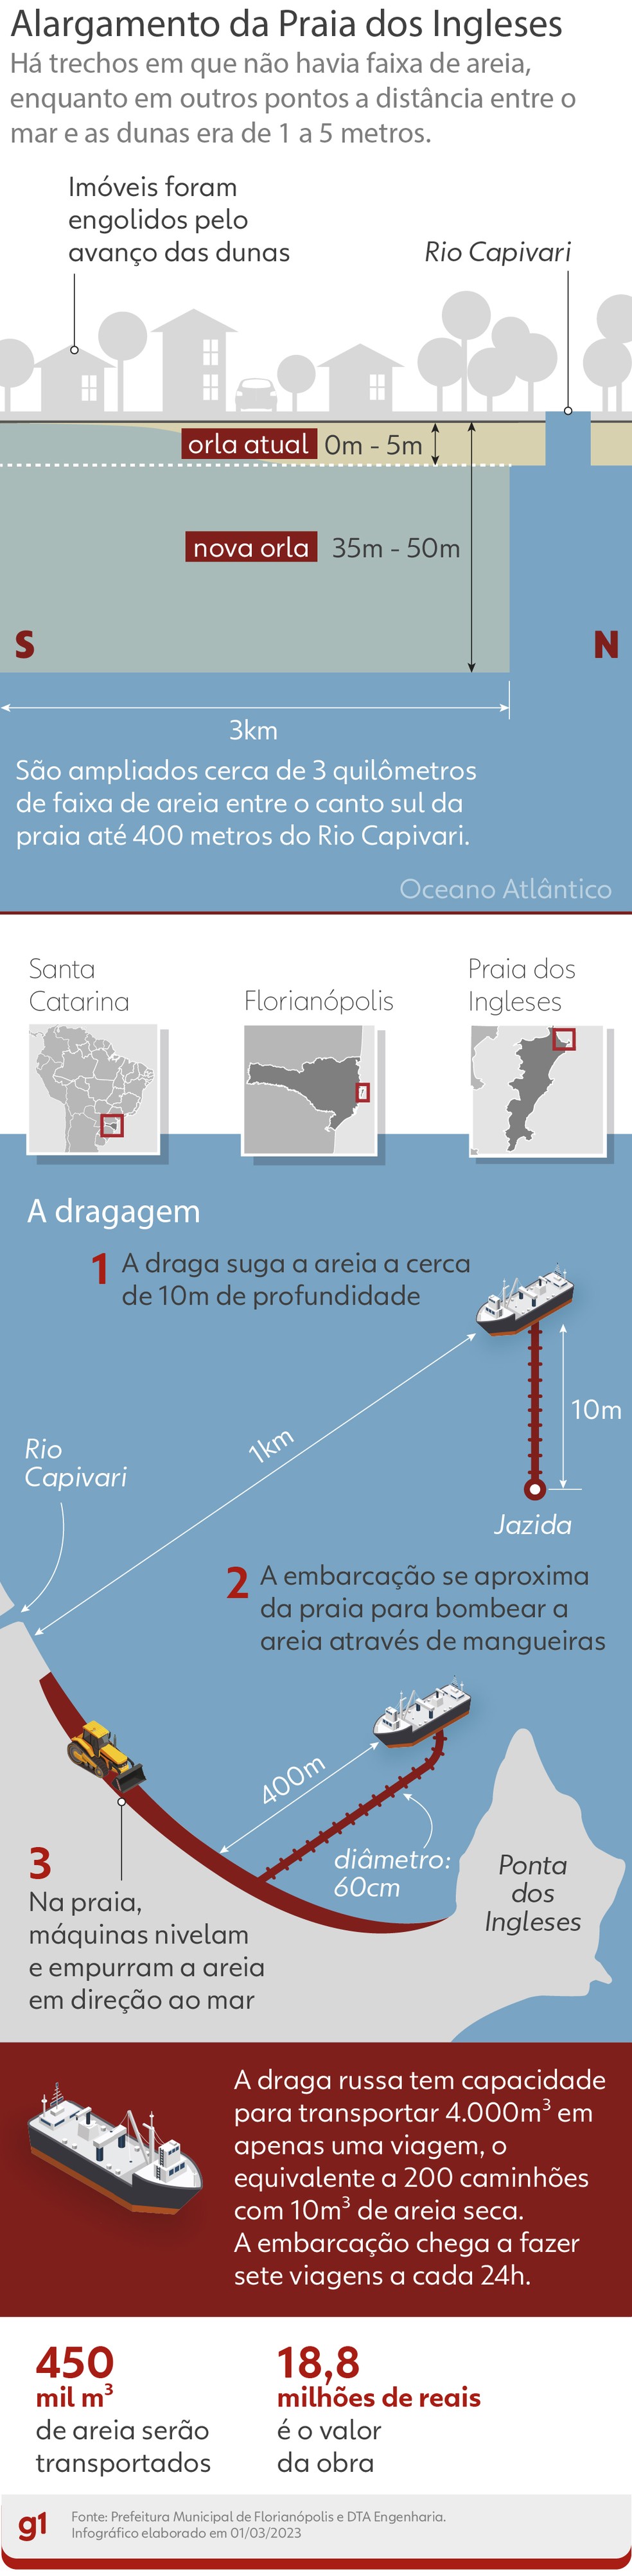 Draga usada em alargamento de praia em SC carrega o mesmo que 200 caminhões  de areia por viagem, Santa Catarina